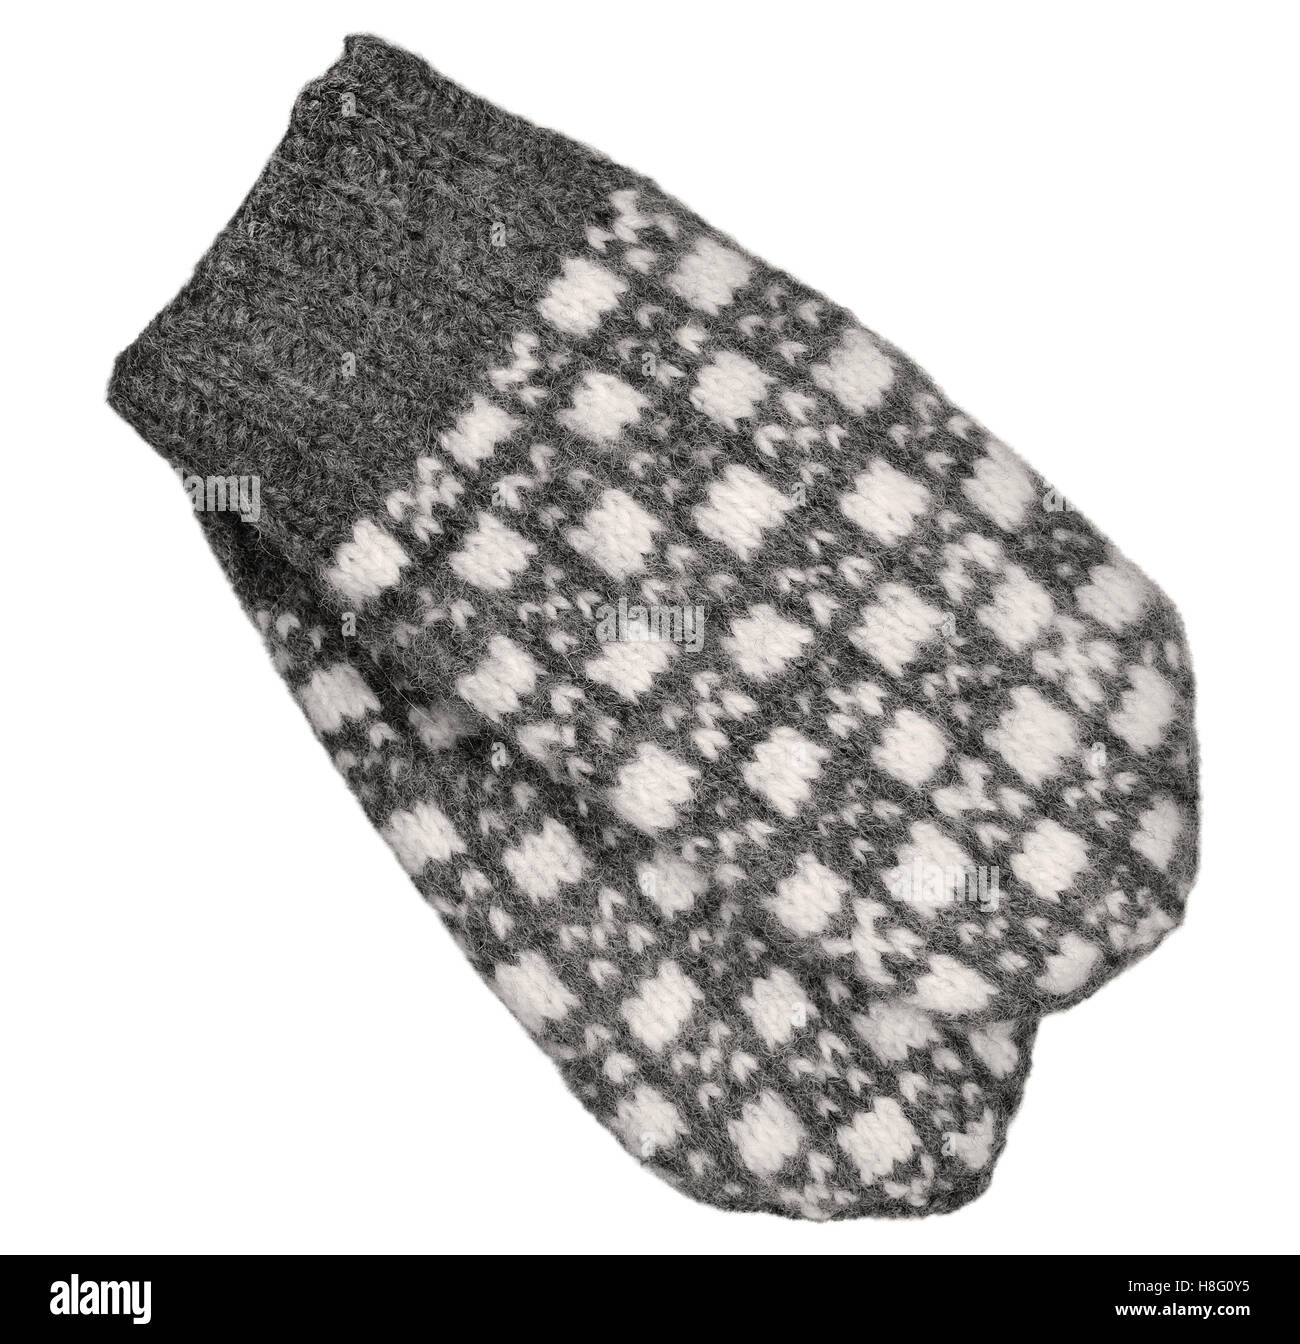 Mitten grigio coppia isolata, bianco grigio testurizzato guanti di lana pattern, a maglia di lana caldo inverno guanti senza dita dettaglio, grandi Foto Stock